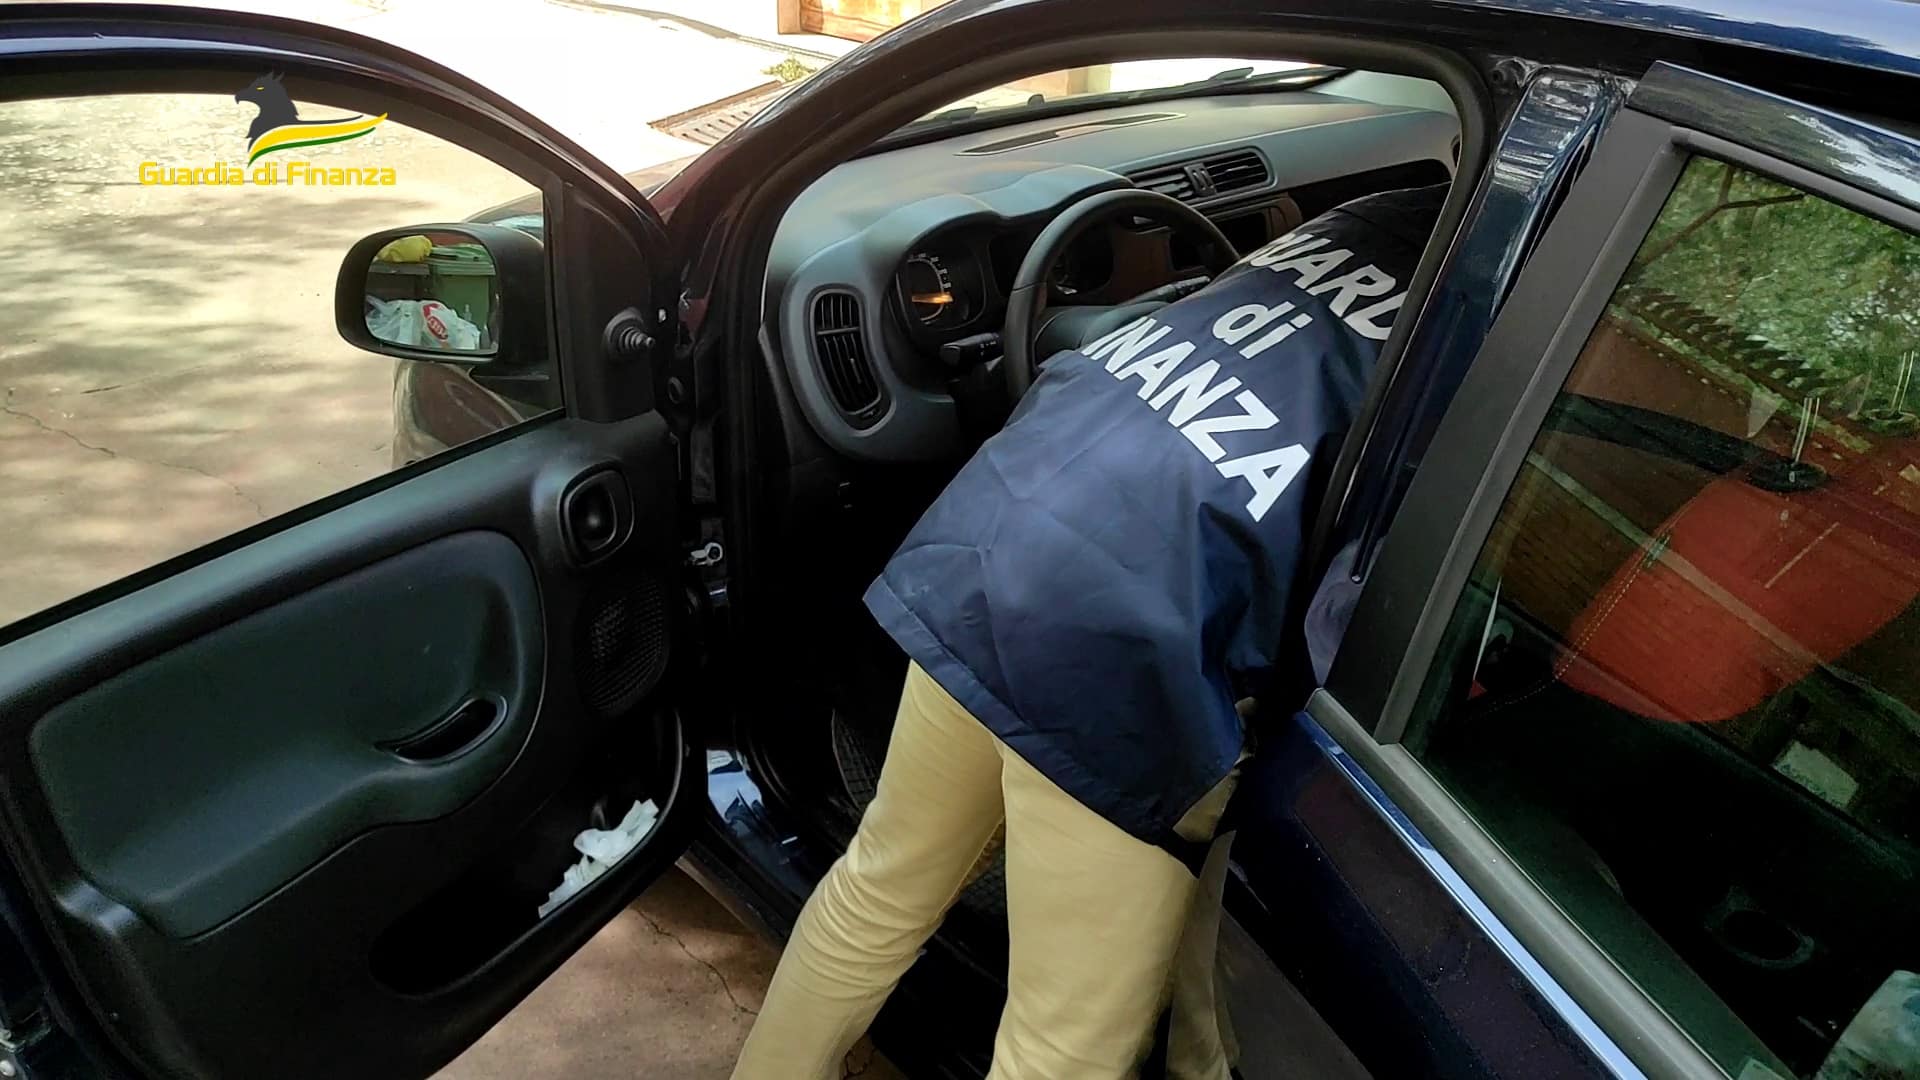 Venditore ambulante nasconde la droga in auto e a casa: sequestrati circa 500 grammi di stupefacente